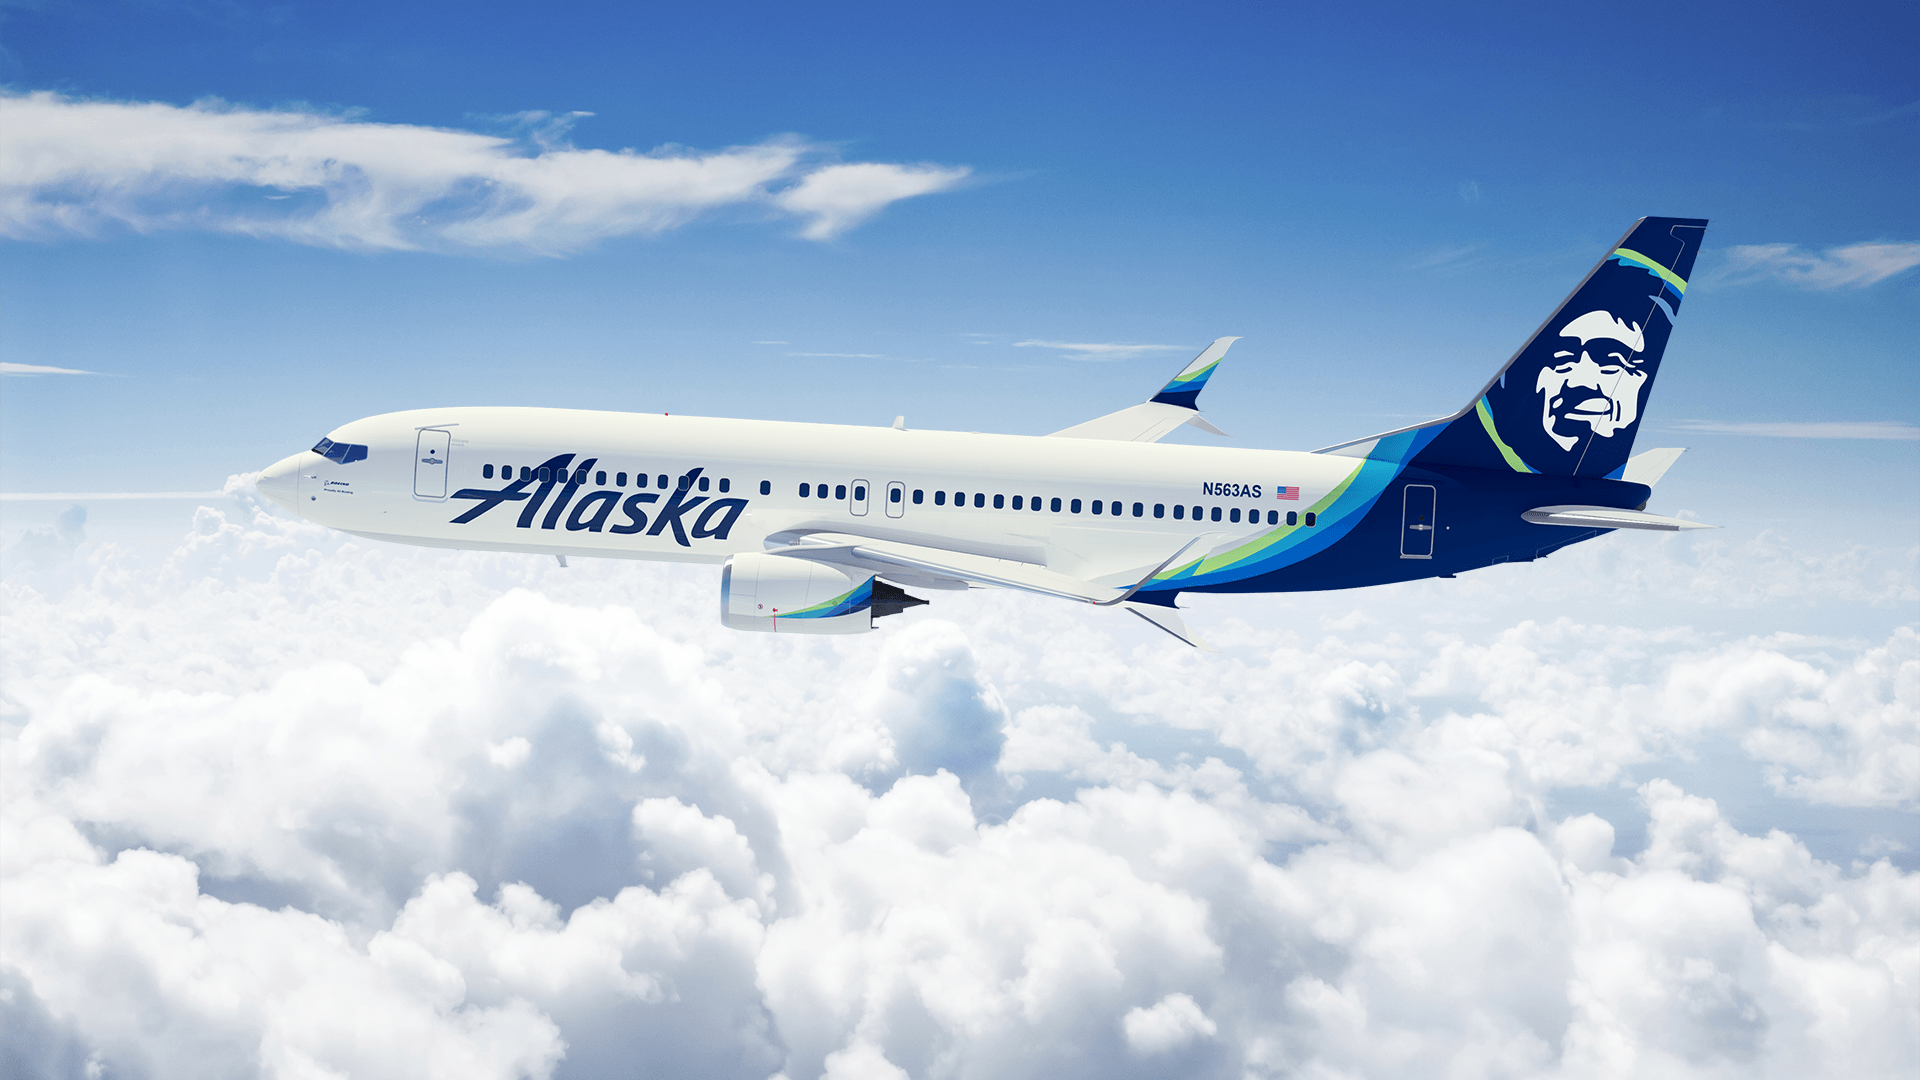 Alaska Airlines Old Logo - Alaska Airlines unveils major brand updates | Alaska Airlines Blog